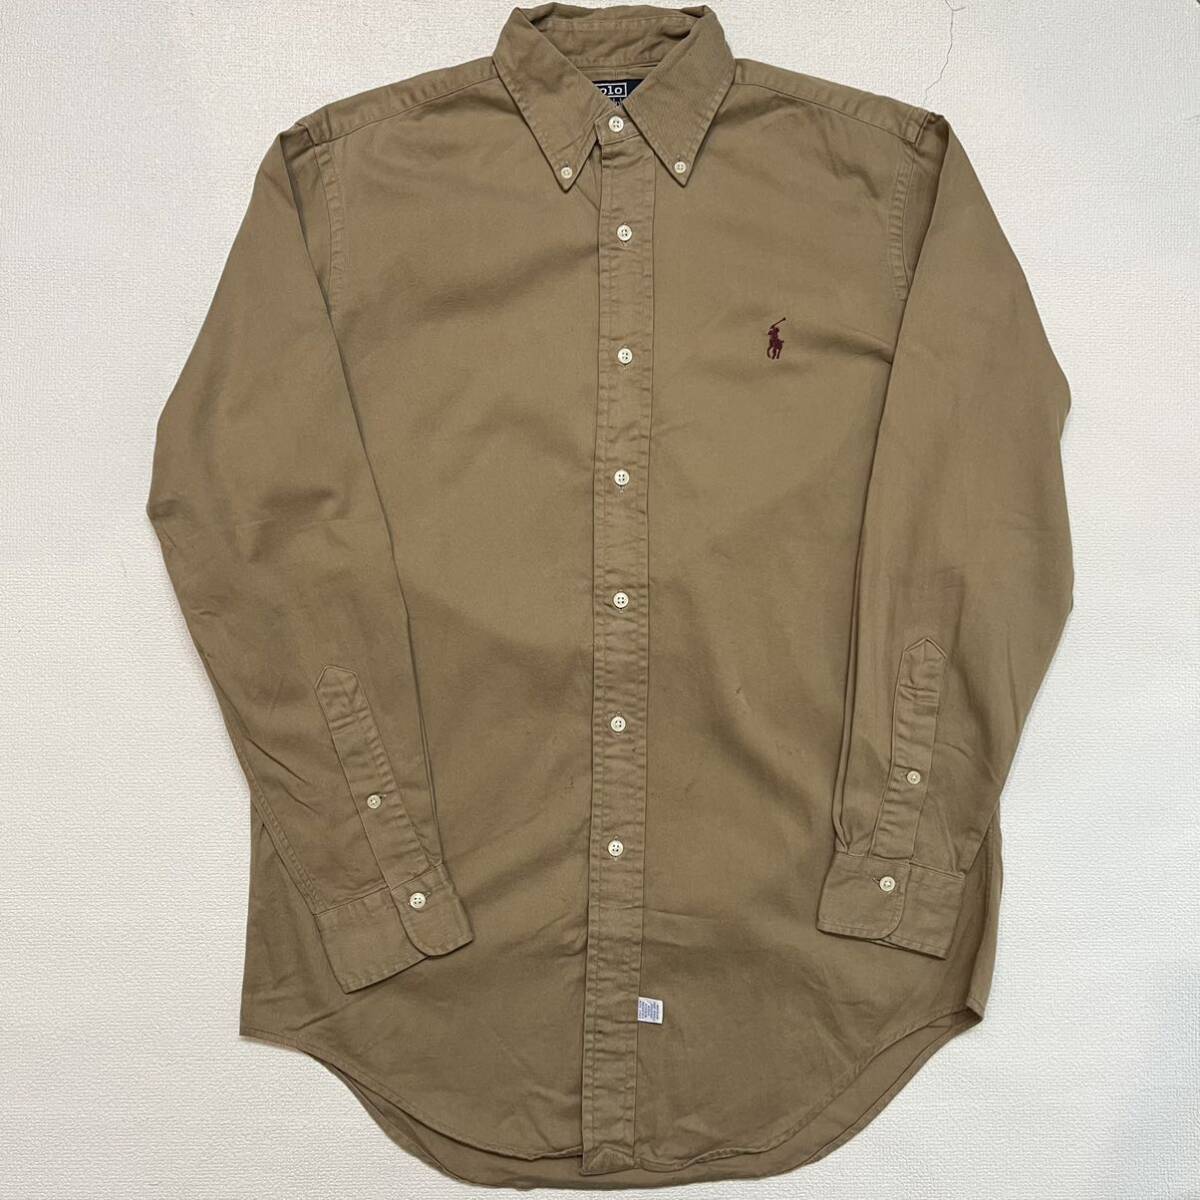 h410 90 年代 ラルフローレン ボタンダウン シャツ S vintage ビンテージ 90s ralph lauren BD shirt